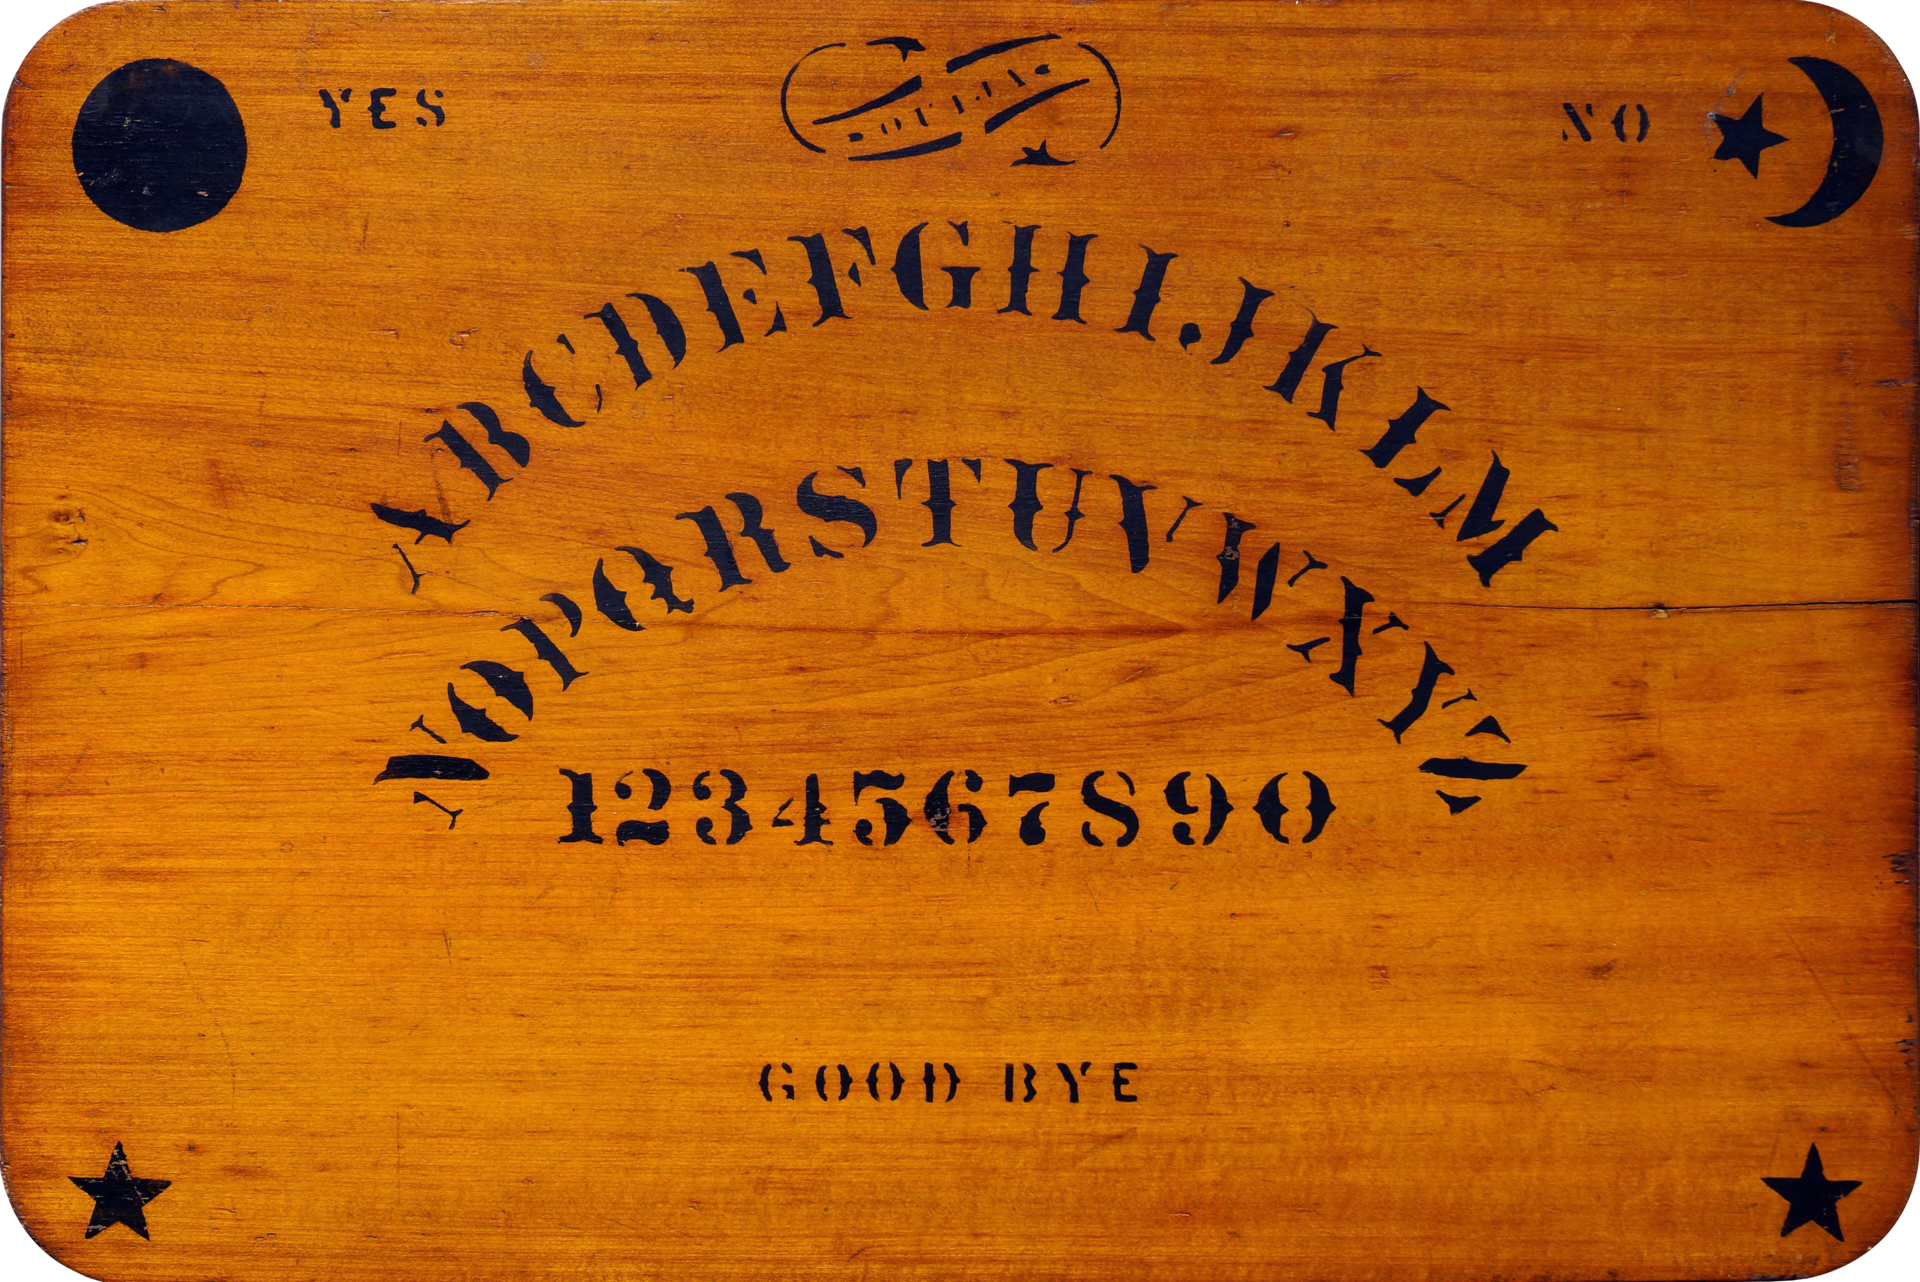 A Ouija board